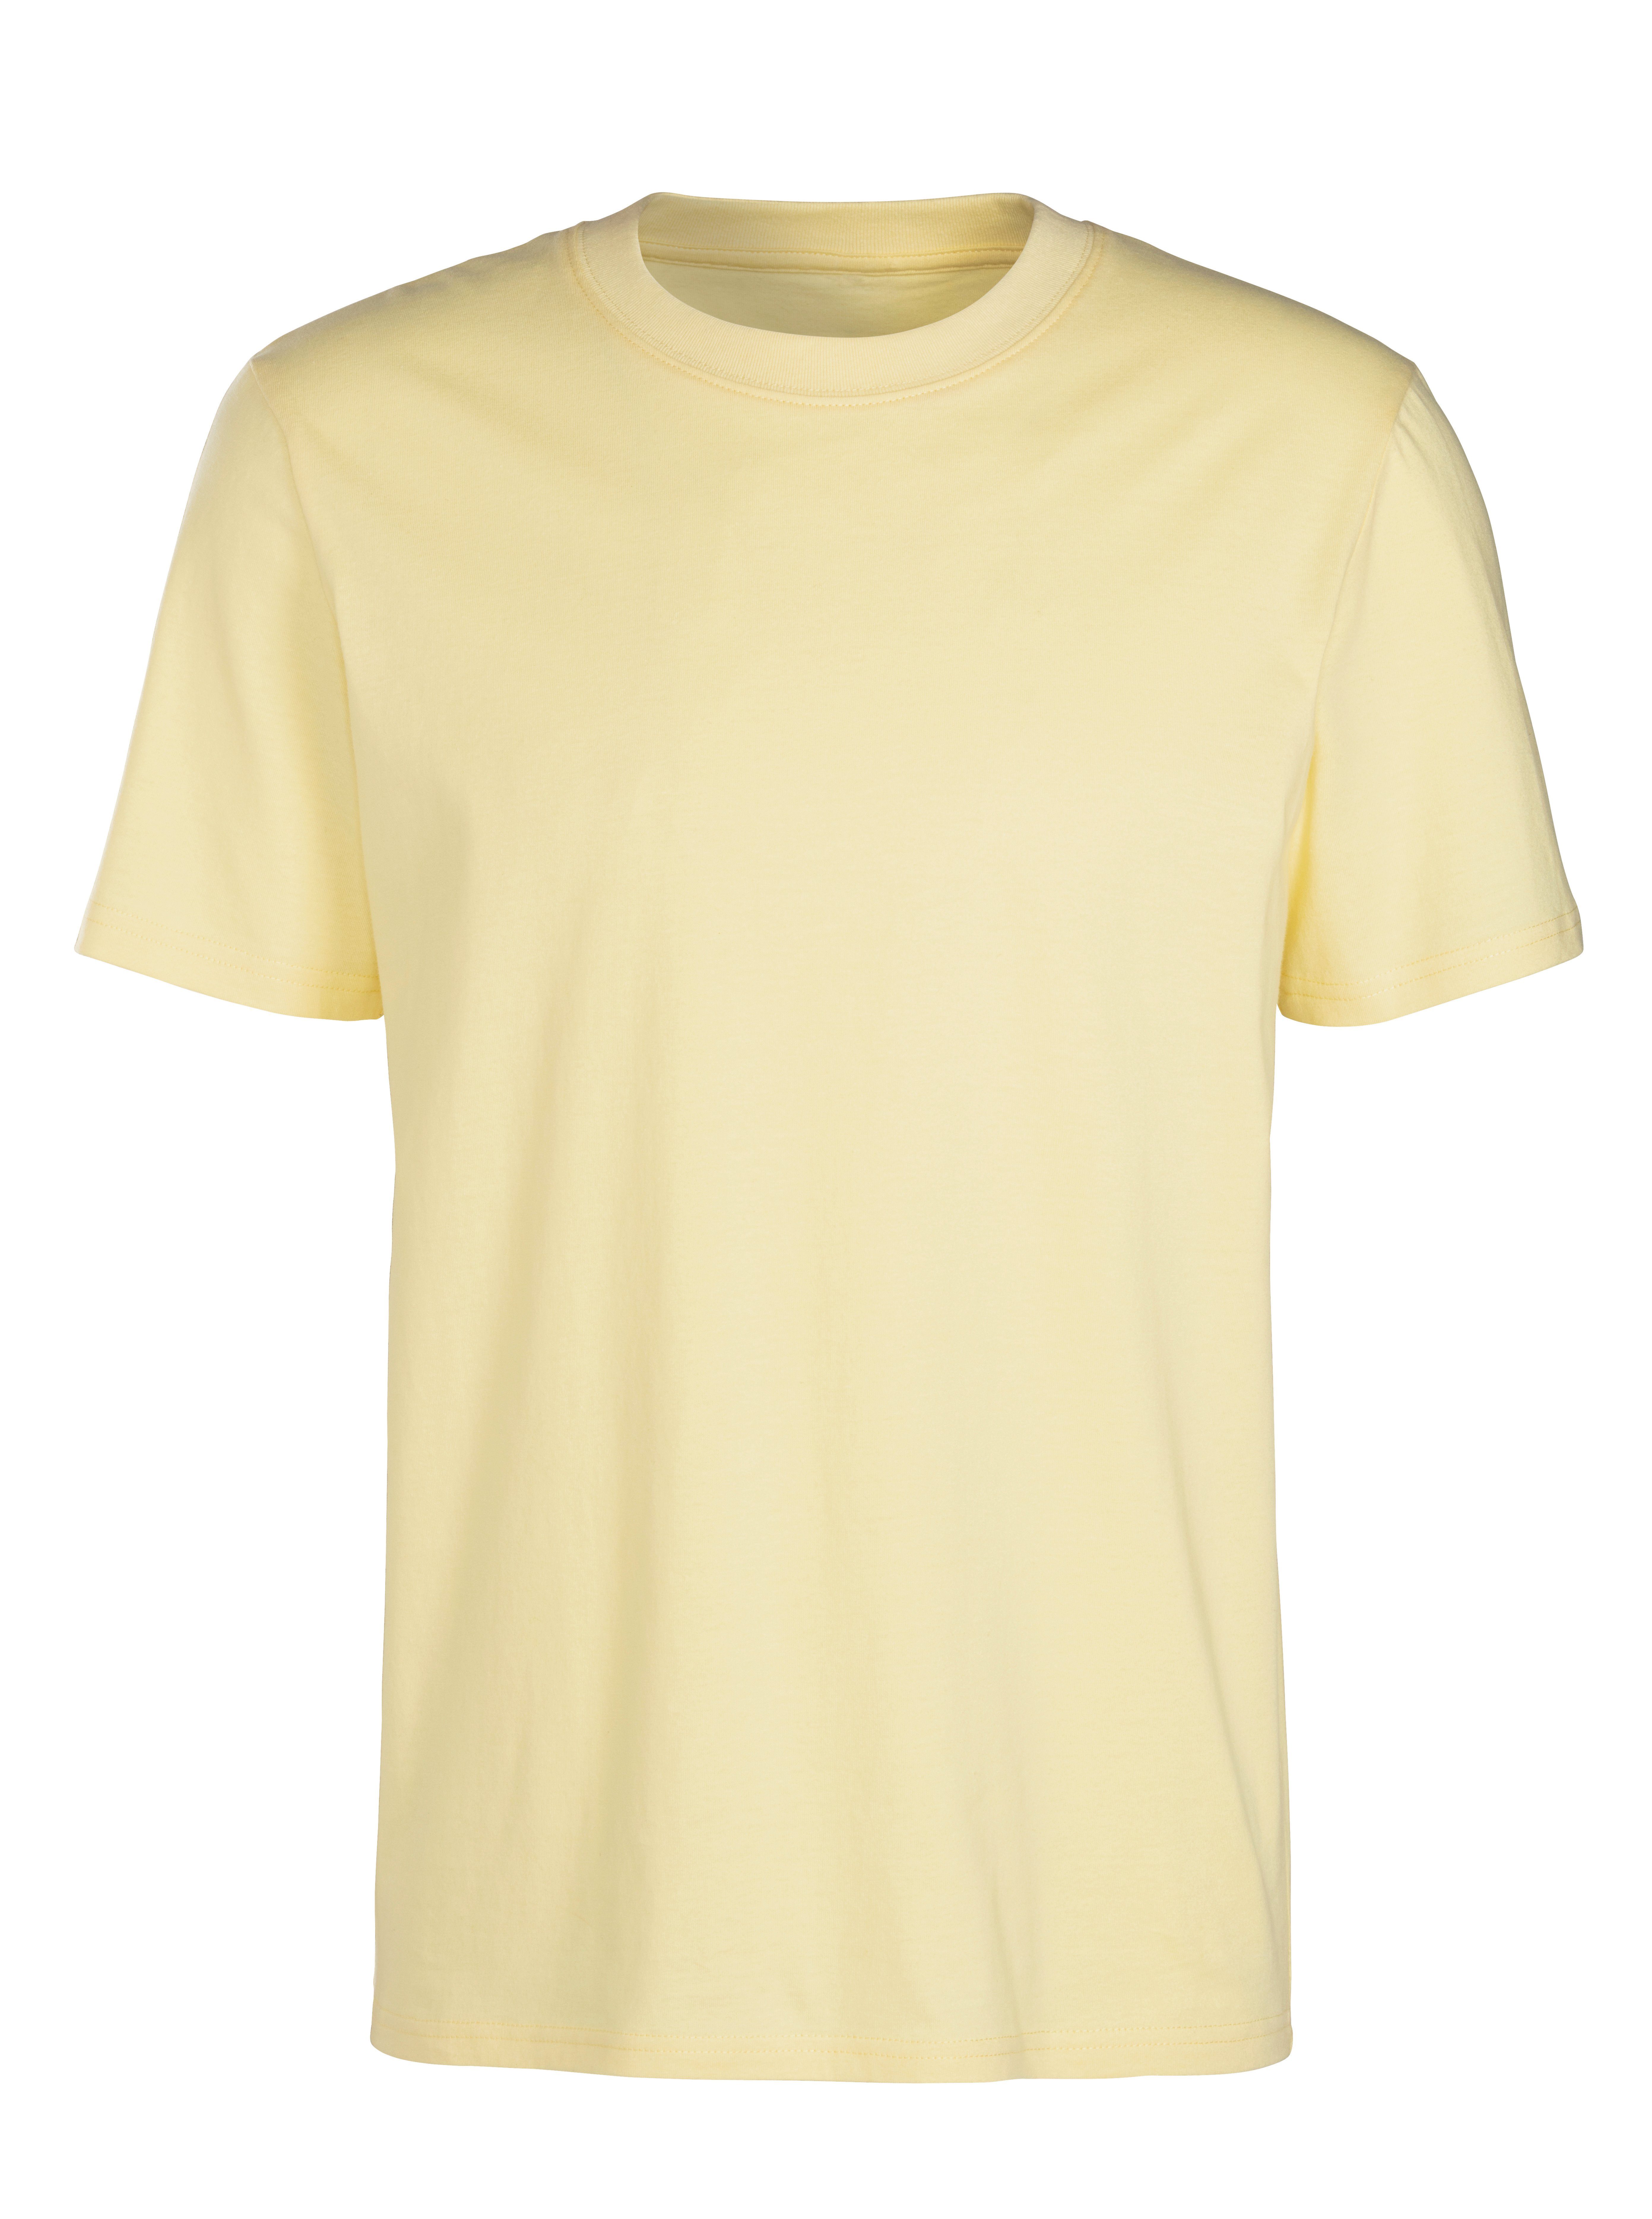 ein klassischer Must-Have koralle KangaROOS / (2er-Pack) in T-Shirt gelb Form